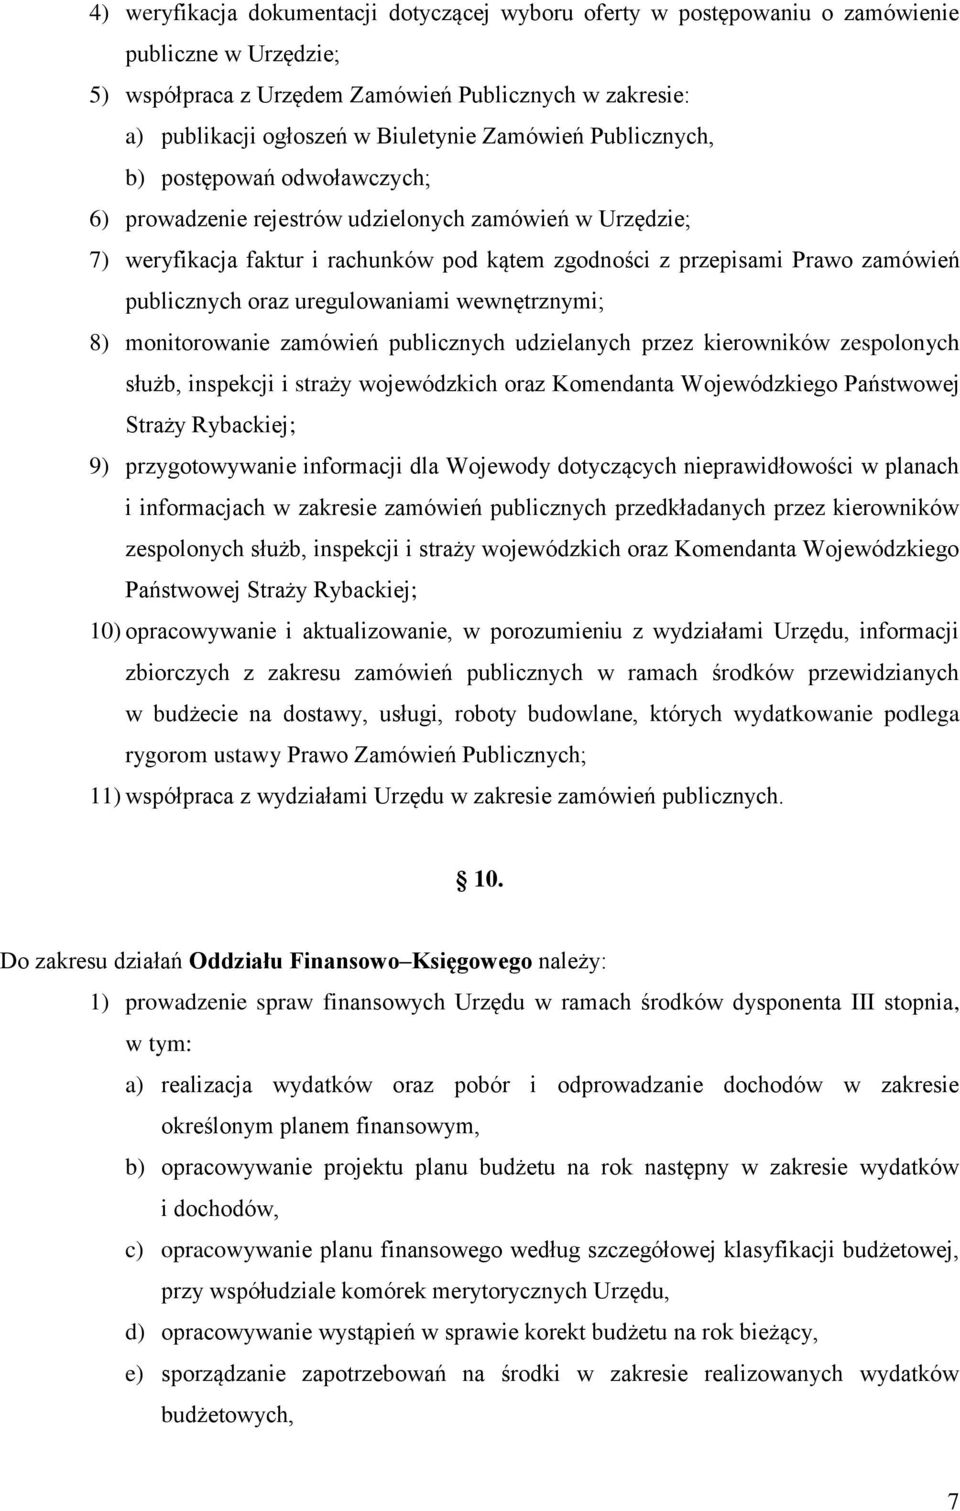 publicznych oraz uregulowaniami wewnętrznymi; 8) monitorowanie zamówień publicznych udzielanych przez kierowników zespolonych służb, inspekcji i straży wojewódzkich oraz Komendanta Wojewódzkiego